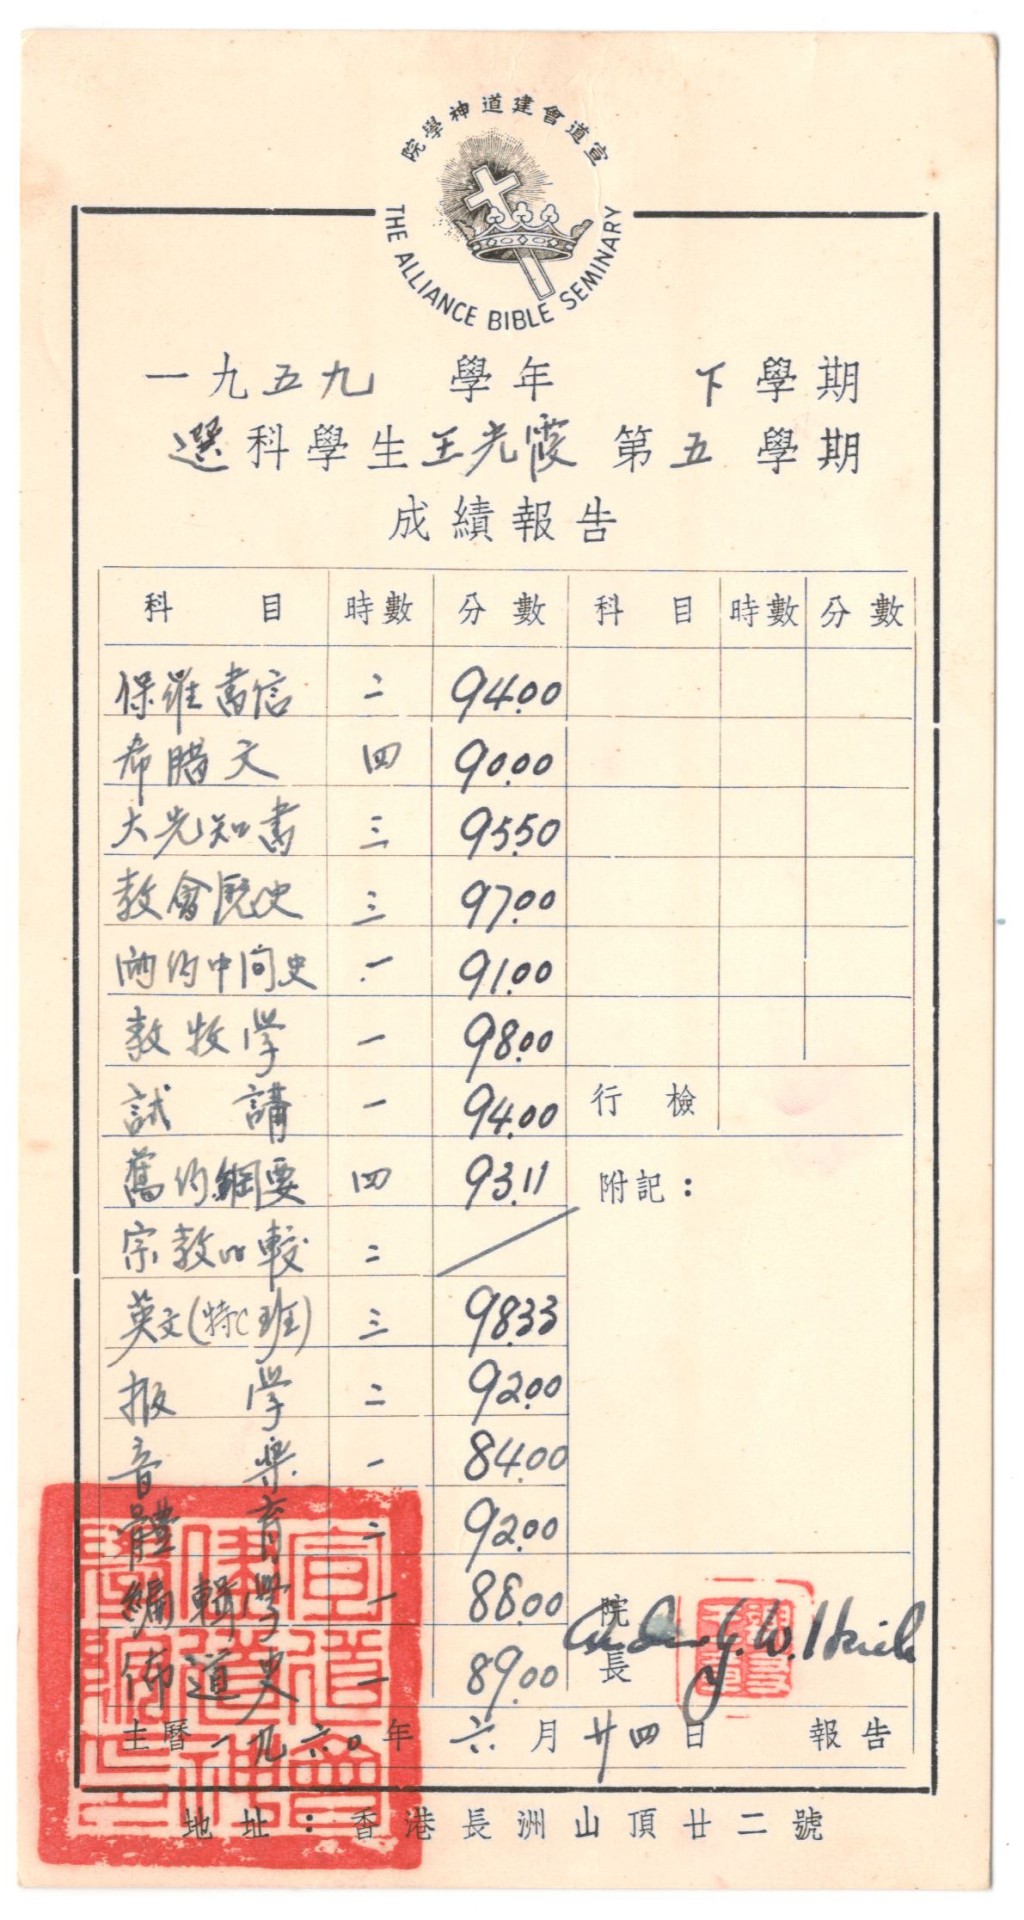 昔日调景岭学校的学生成绩表(资料来源：西贡民政事务处)